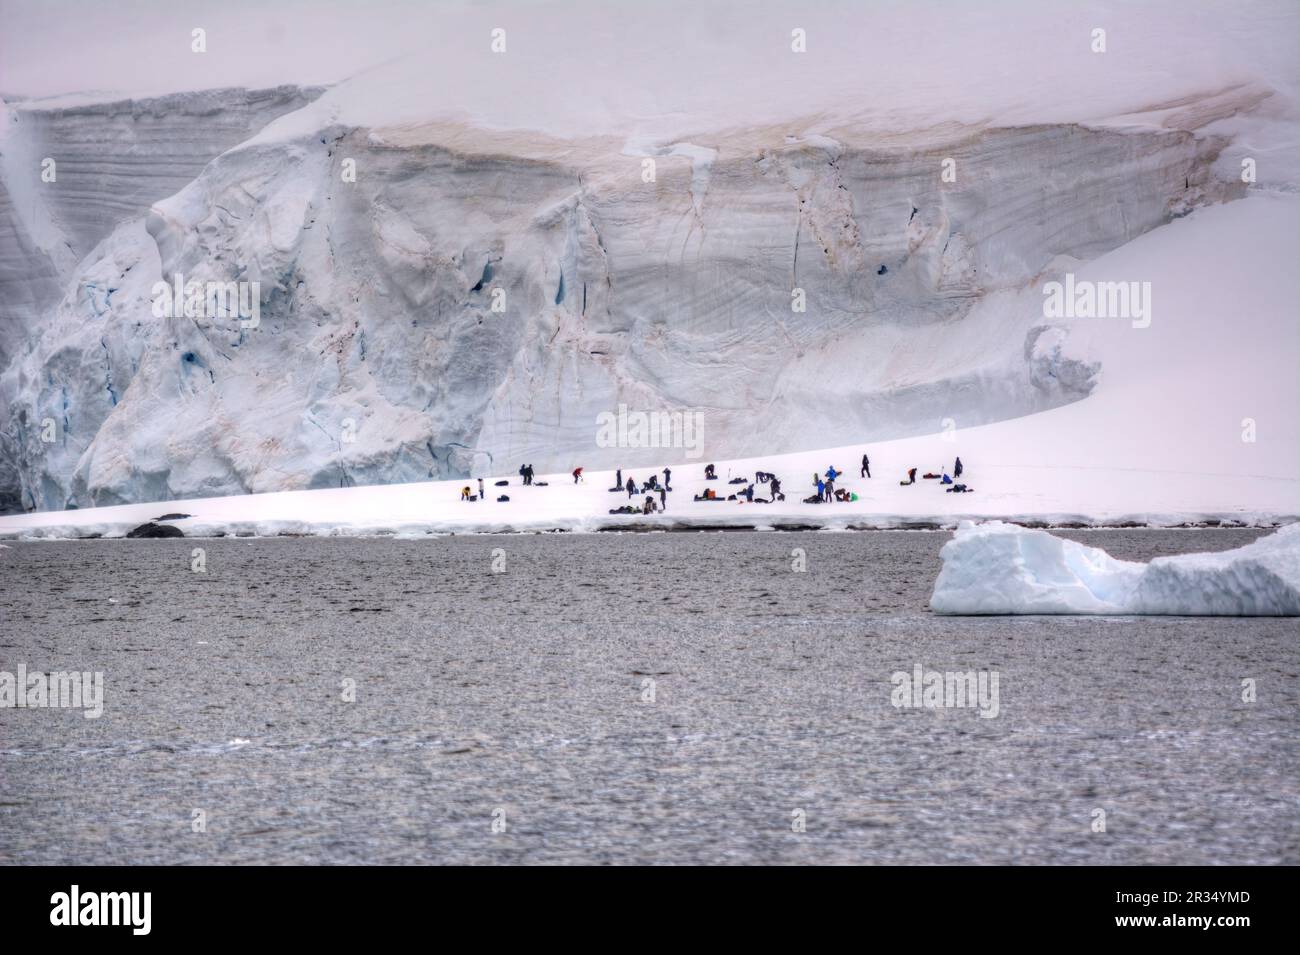 Los turistas establecen un campamento en un glaciar en la Antártida Foto de stock